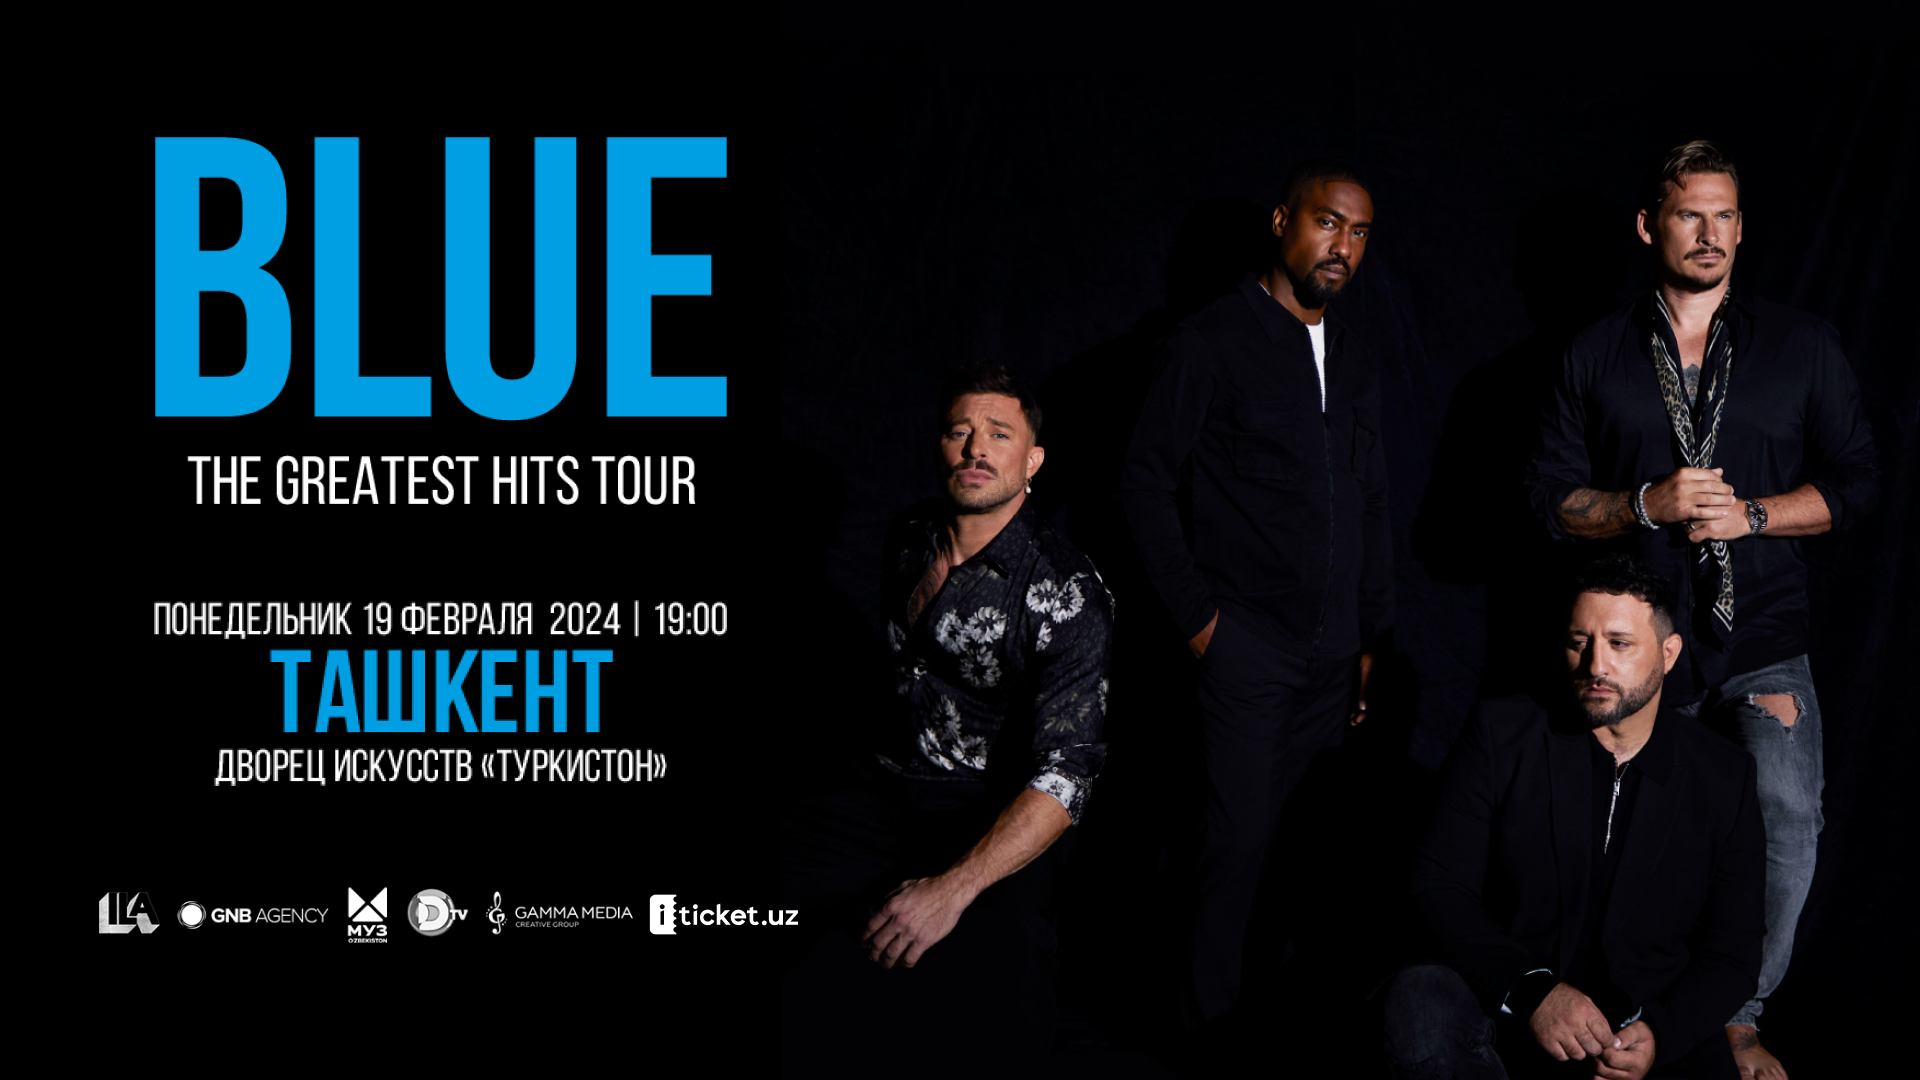 Британская группа Blue выступит с концертом в Ташкенте